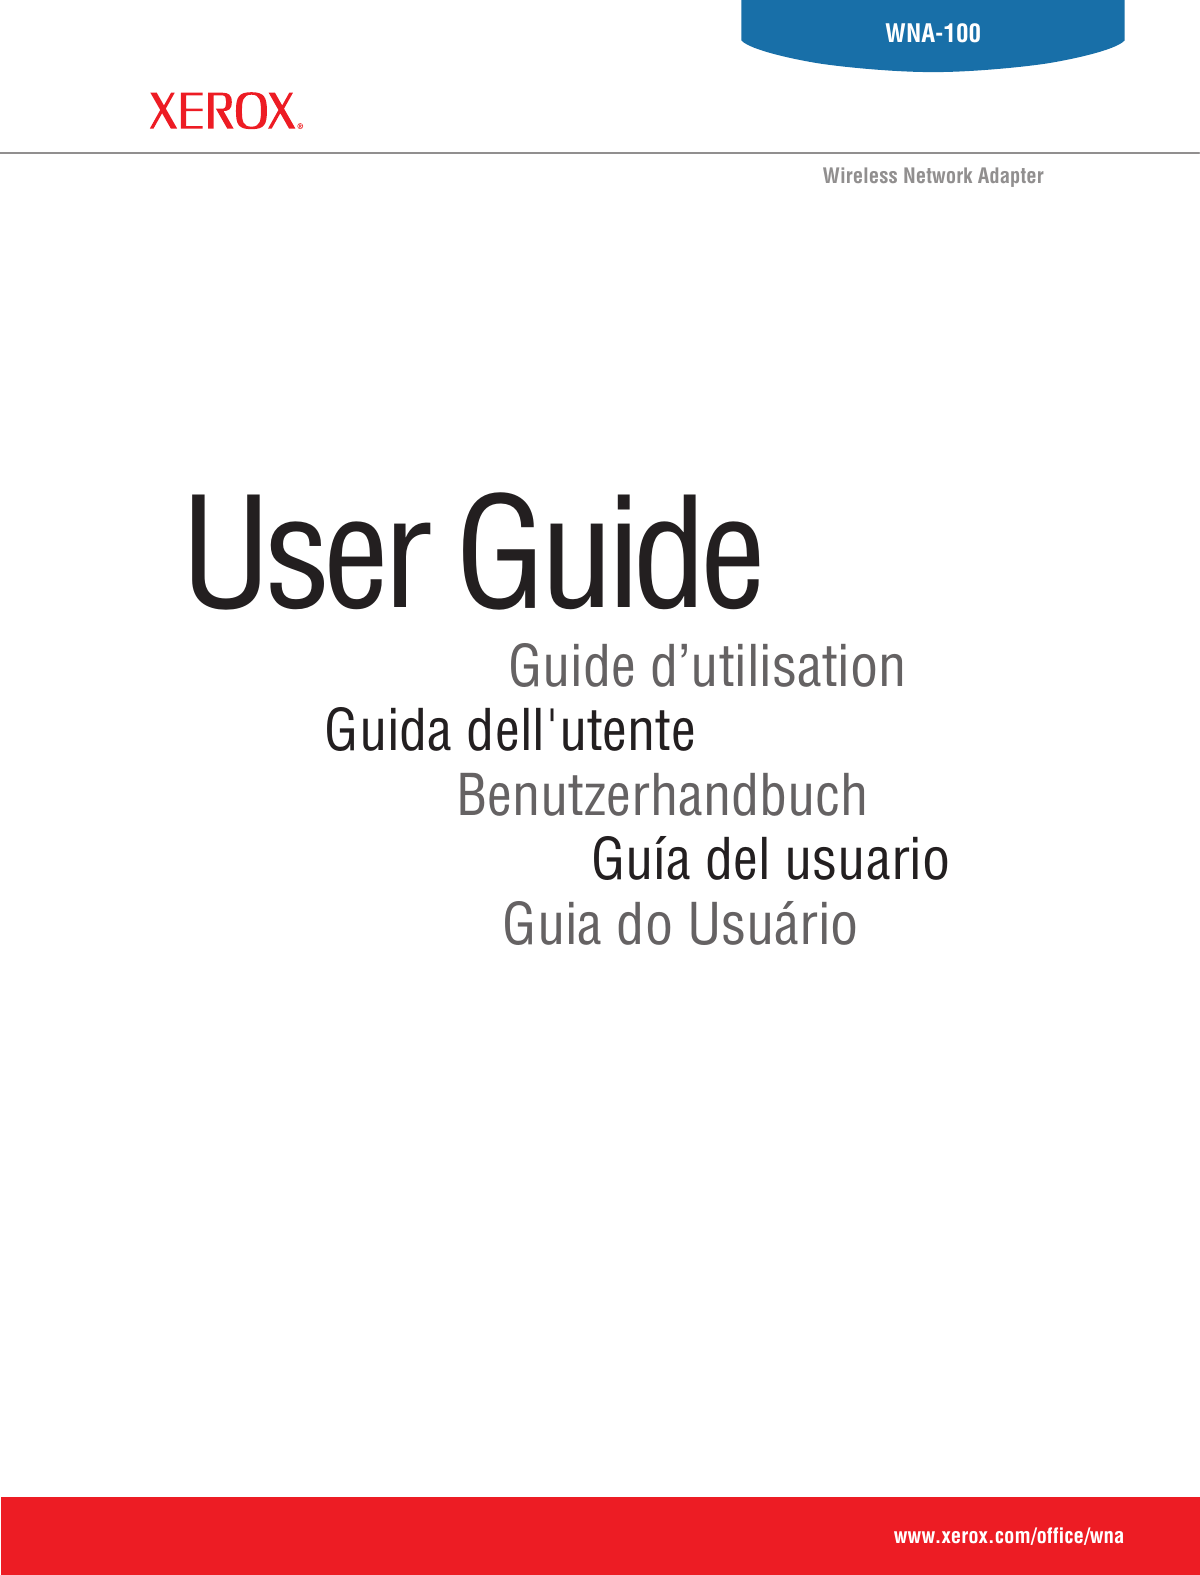 Guia do UsuárioGuía del usuarioBenutzerhandbuchGuida dell&apos;utenteGuide d’utilisationUser Guide www.xerox.com/office/wnaWNA-100Wireless Network Adapter